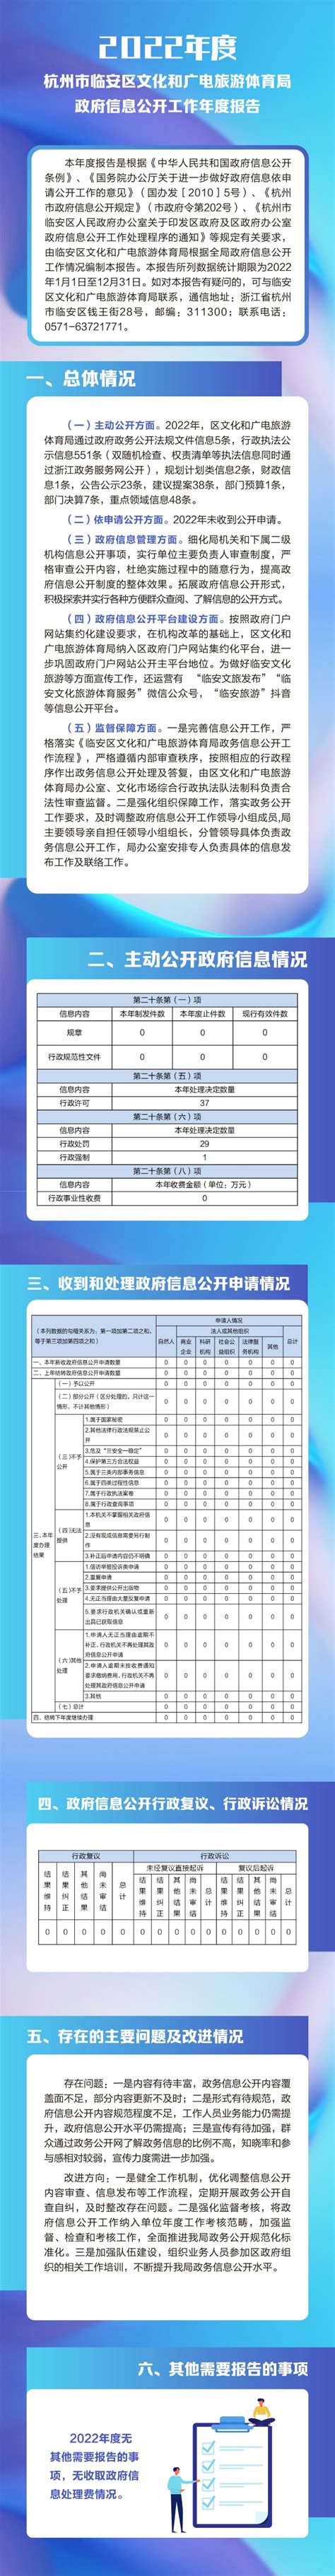 【图解】杭州市临安区文化和广电旅游体育局2022年政府信息公开工作年度报告